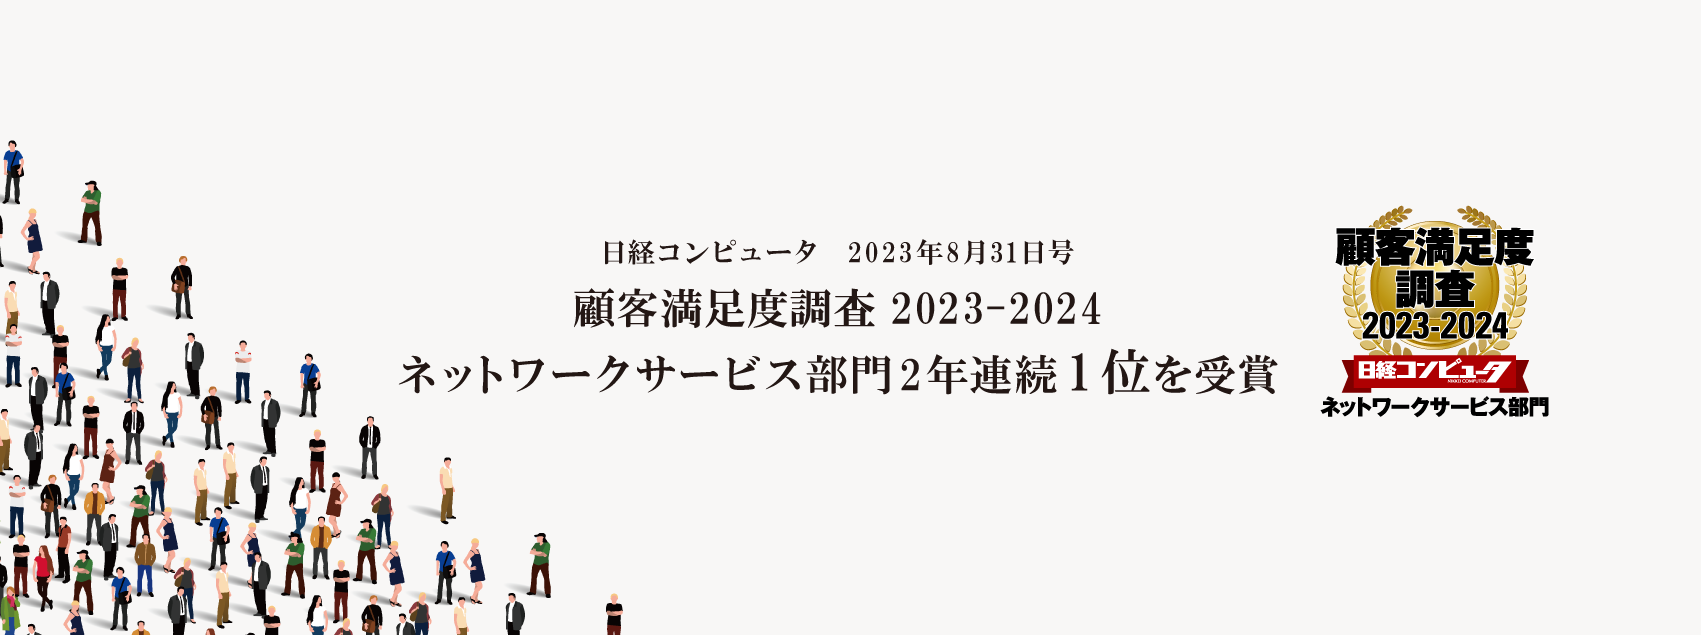 日経コンピュータ 顧客満足度調査 2022-2023